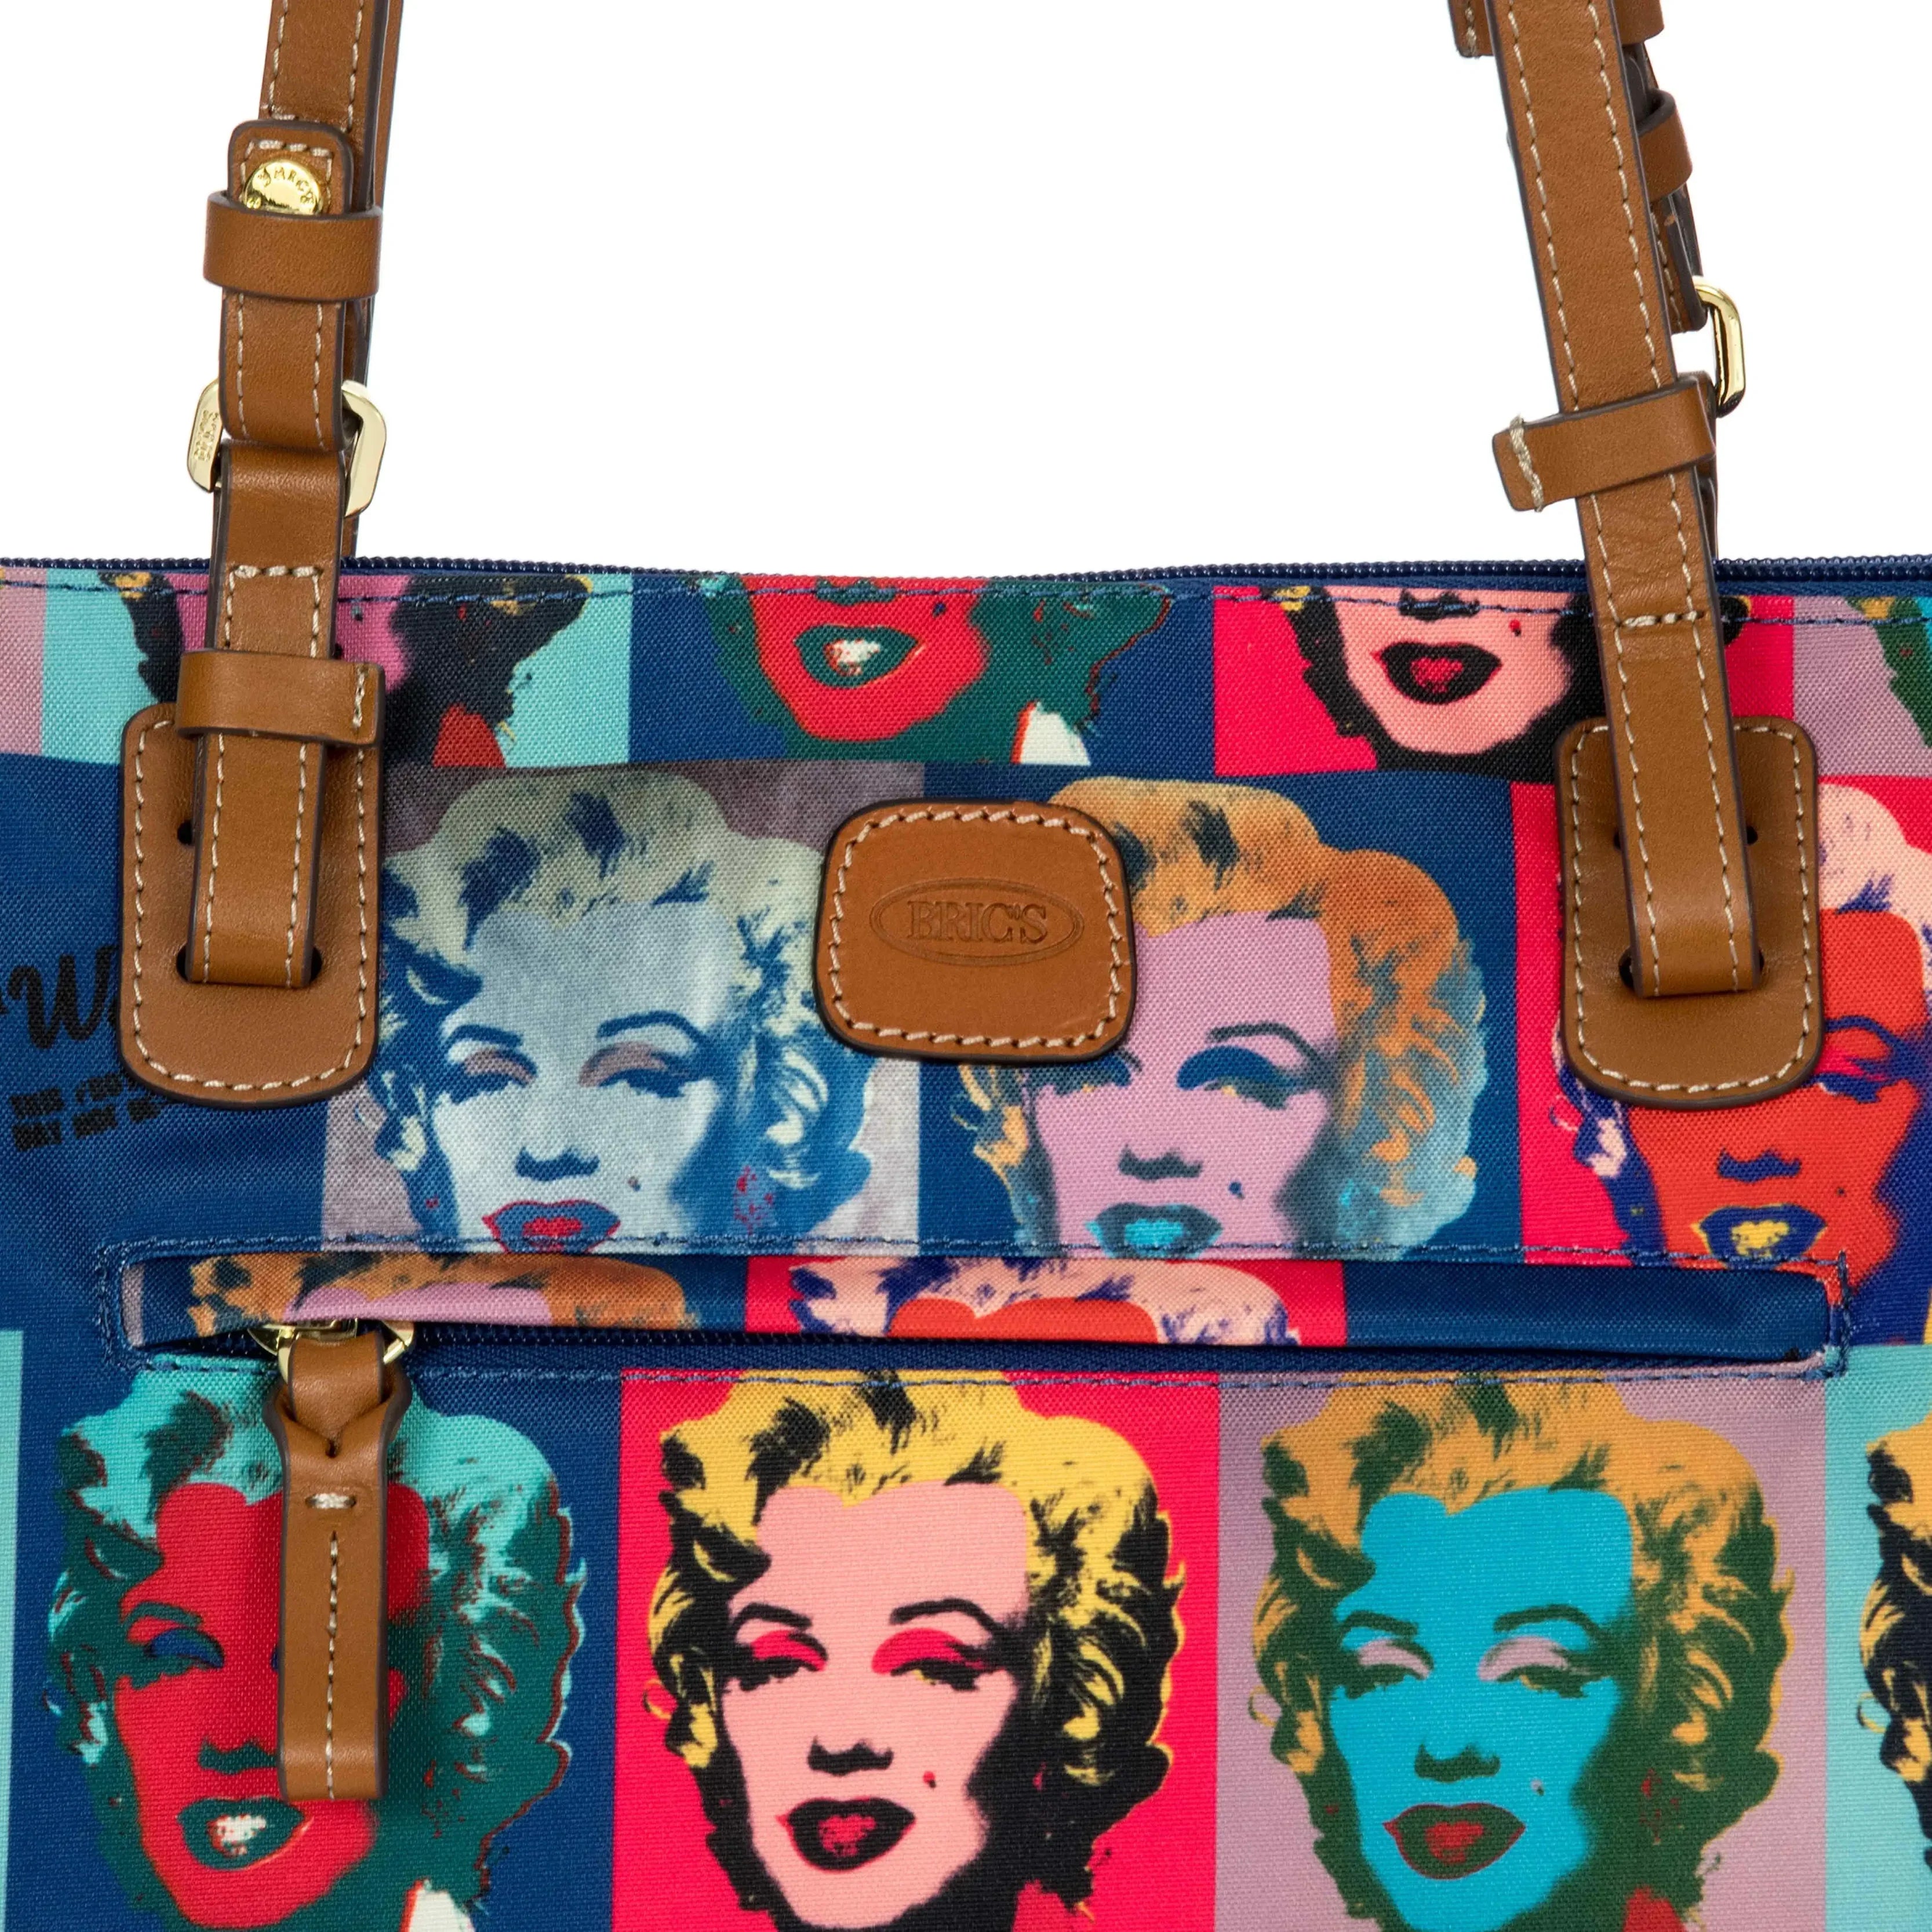 Brics Andy Warhol Shopping Bag 45 cm - Marilyn